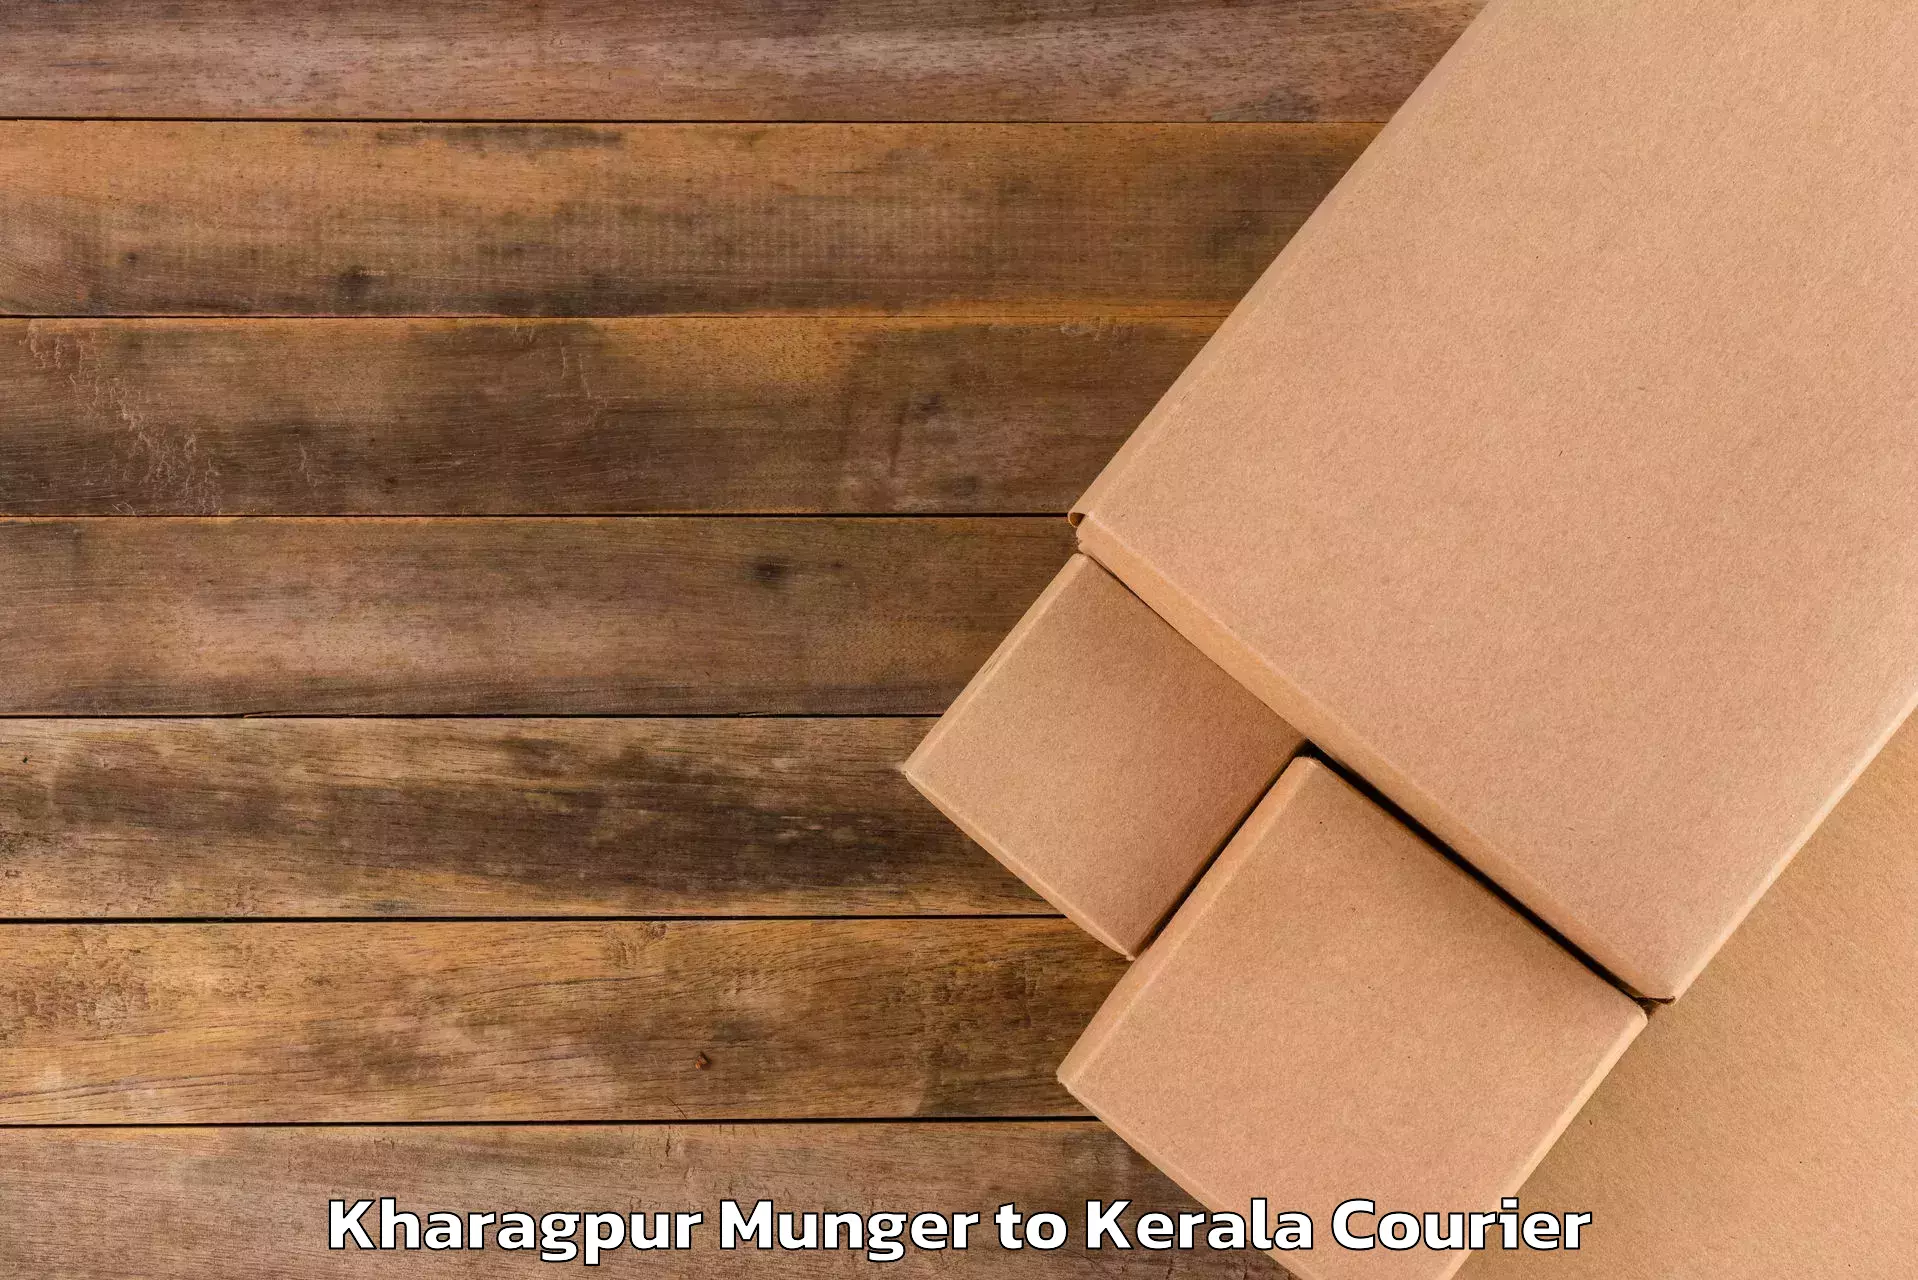 Luggage delivery optimization Kharagpur Munger to Angamaly